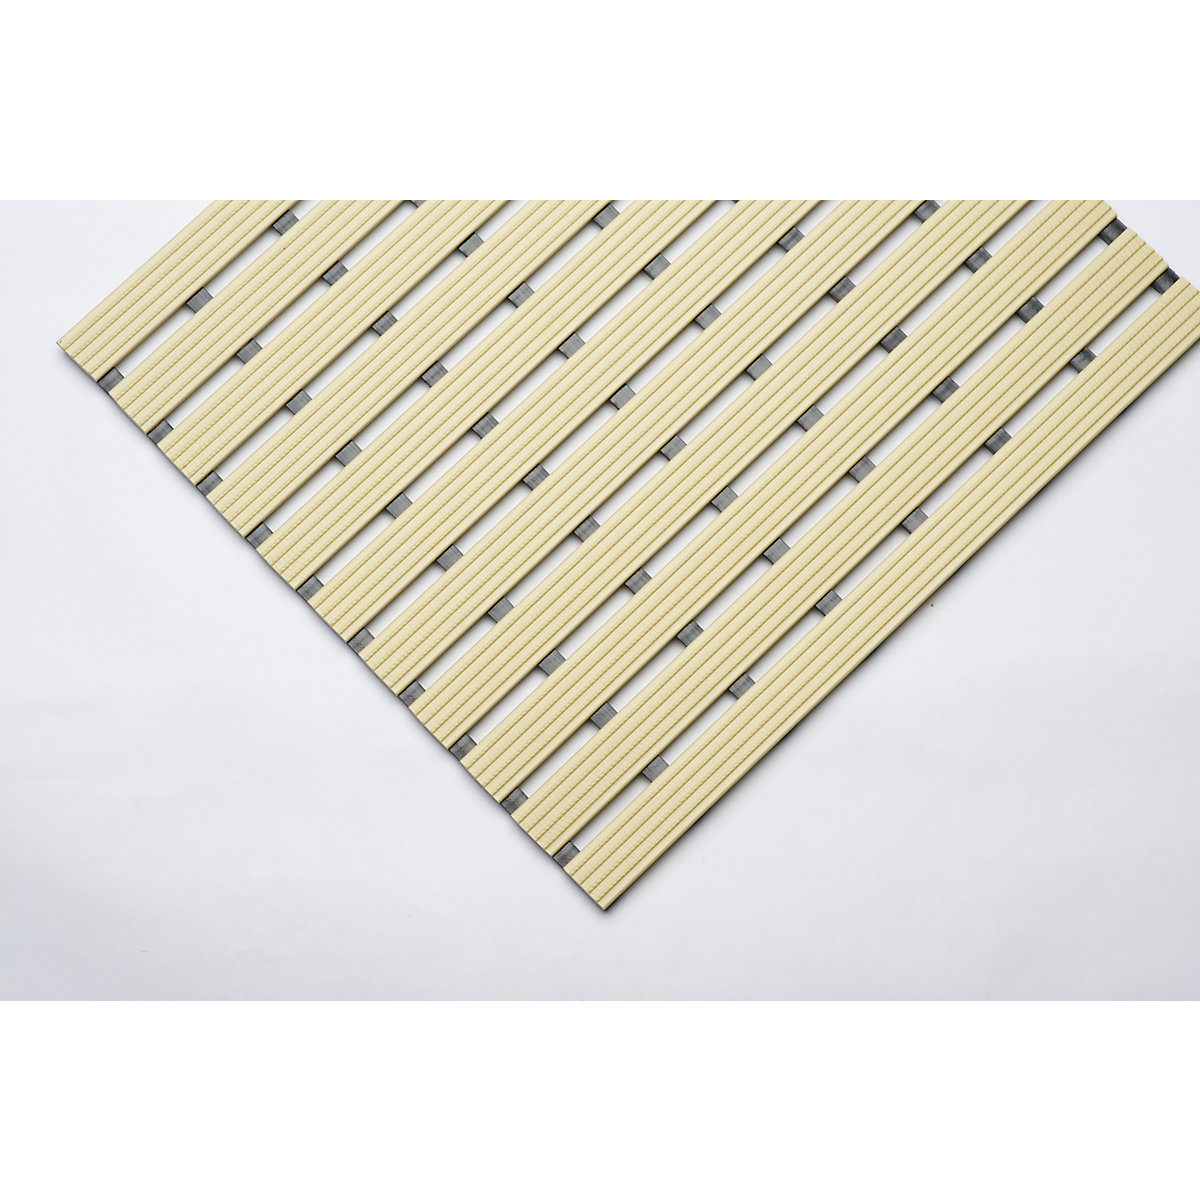 PVC profile matting, per metre - EHA